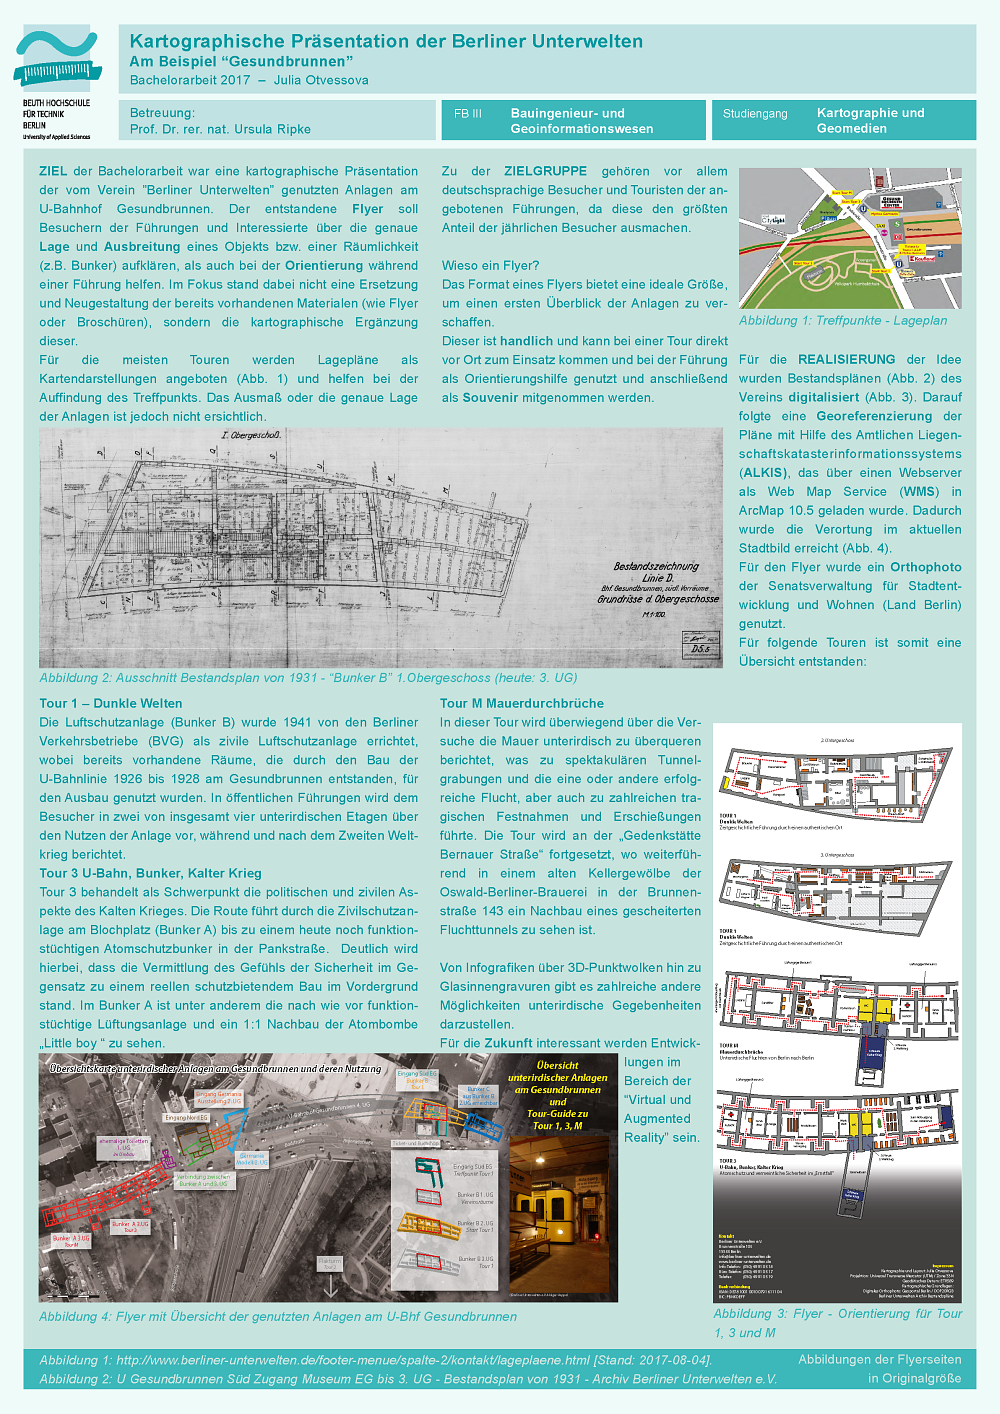 Poster: Kartographische Präsentation der Berliner Unterwelten – am Beispiel Gesundbrunnen